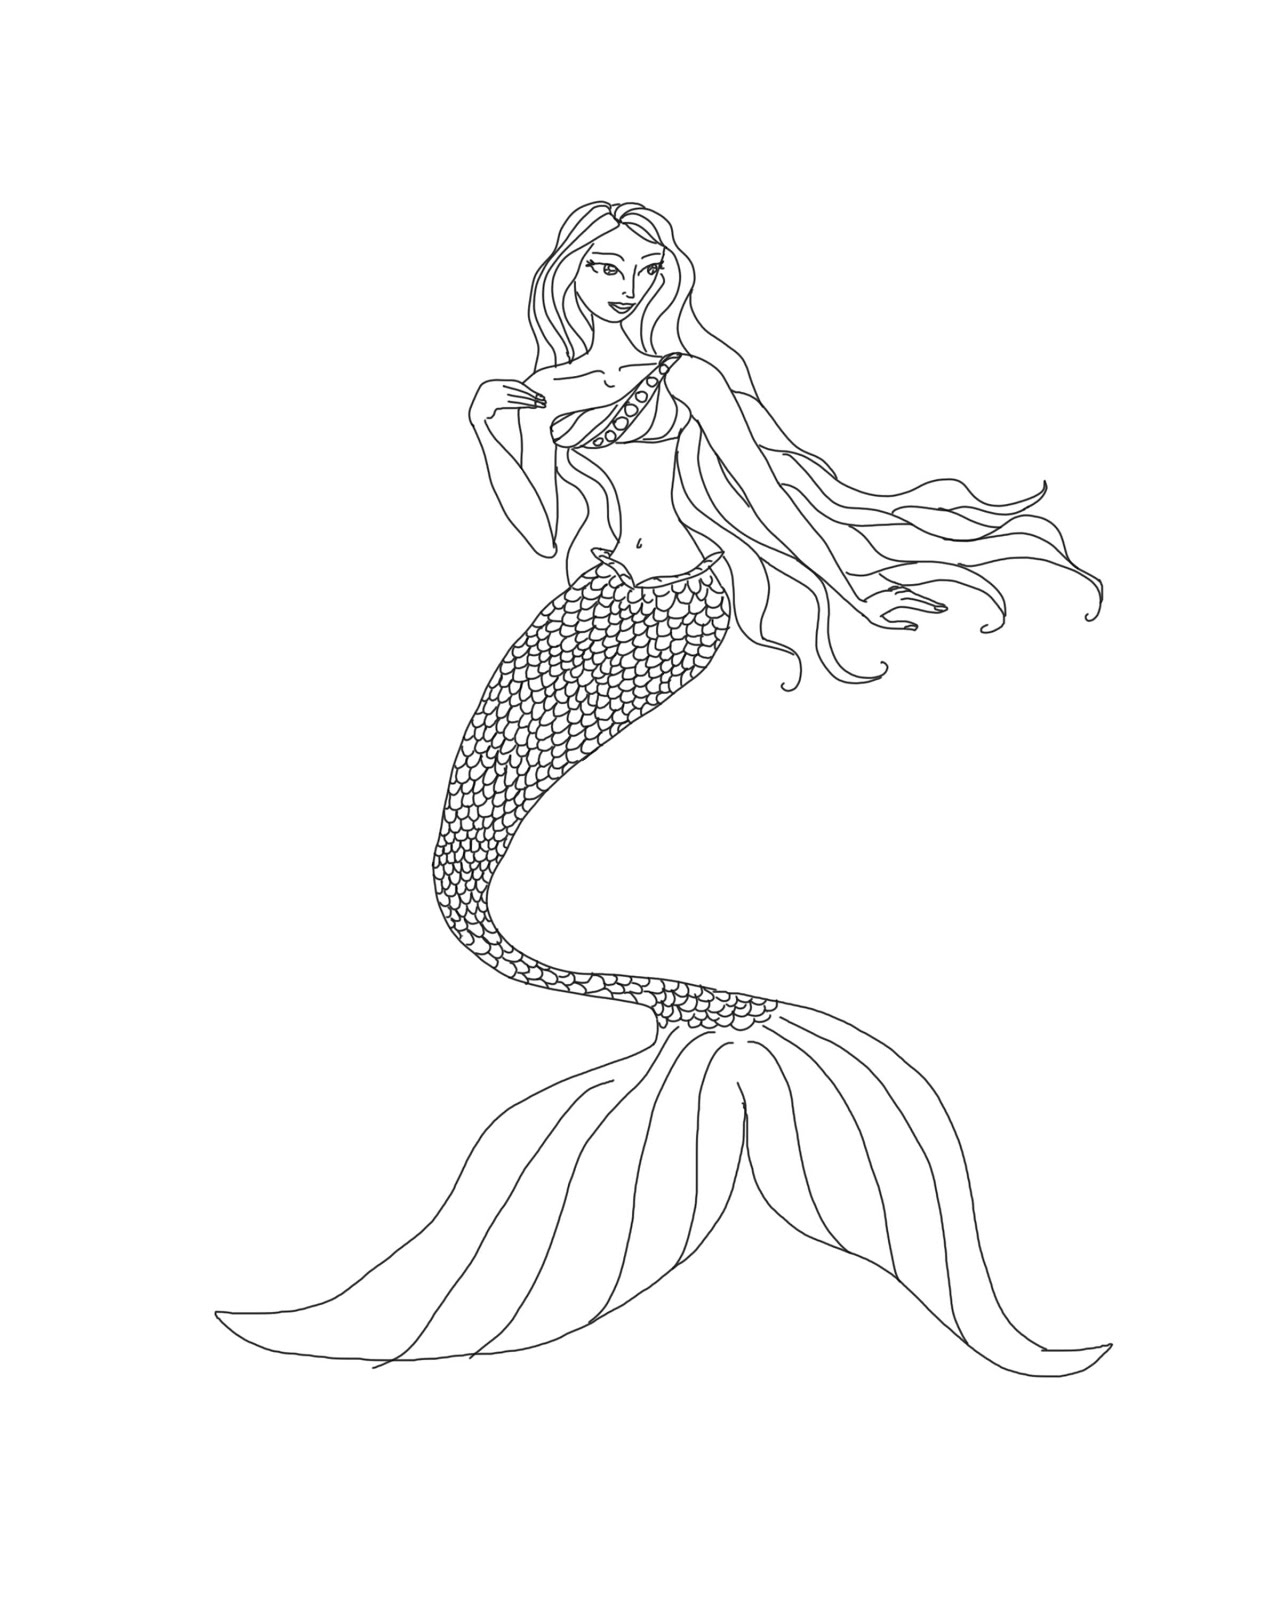 mermaid-coloring-page-printable